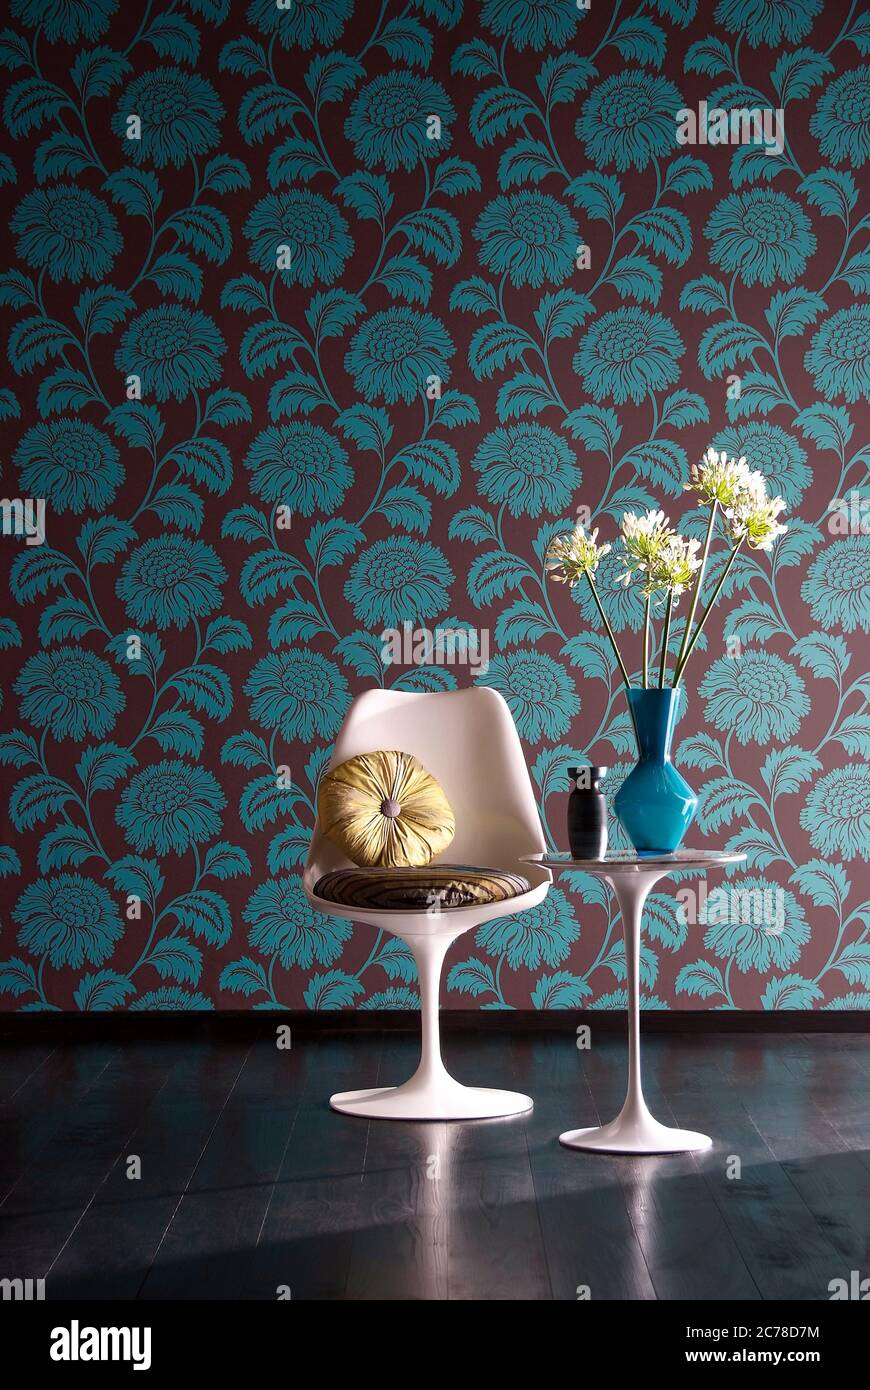 Aufnahme von eleganten Stuhl mit Blumenvase auf Beistelltisch vor floralen Tapeten Wand Stockfoto